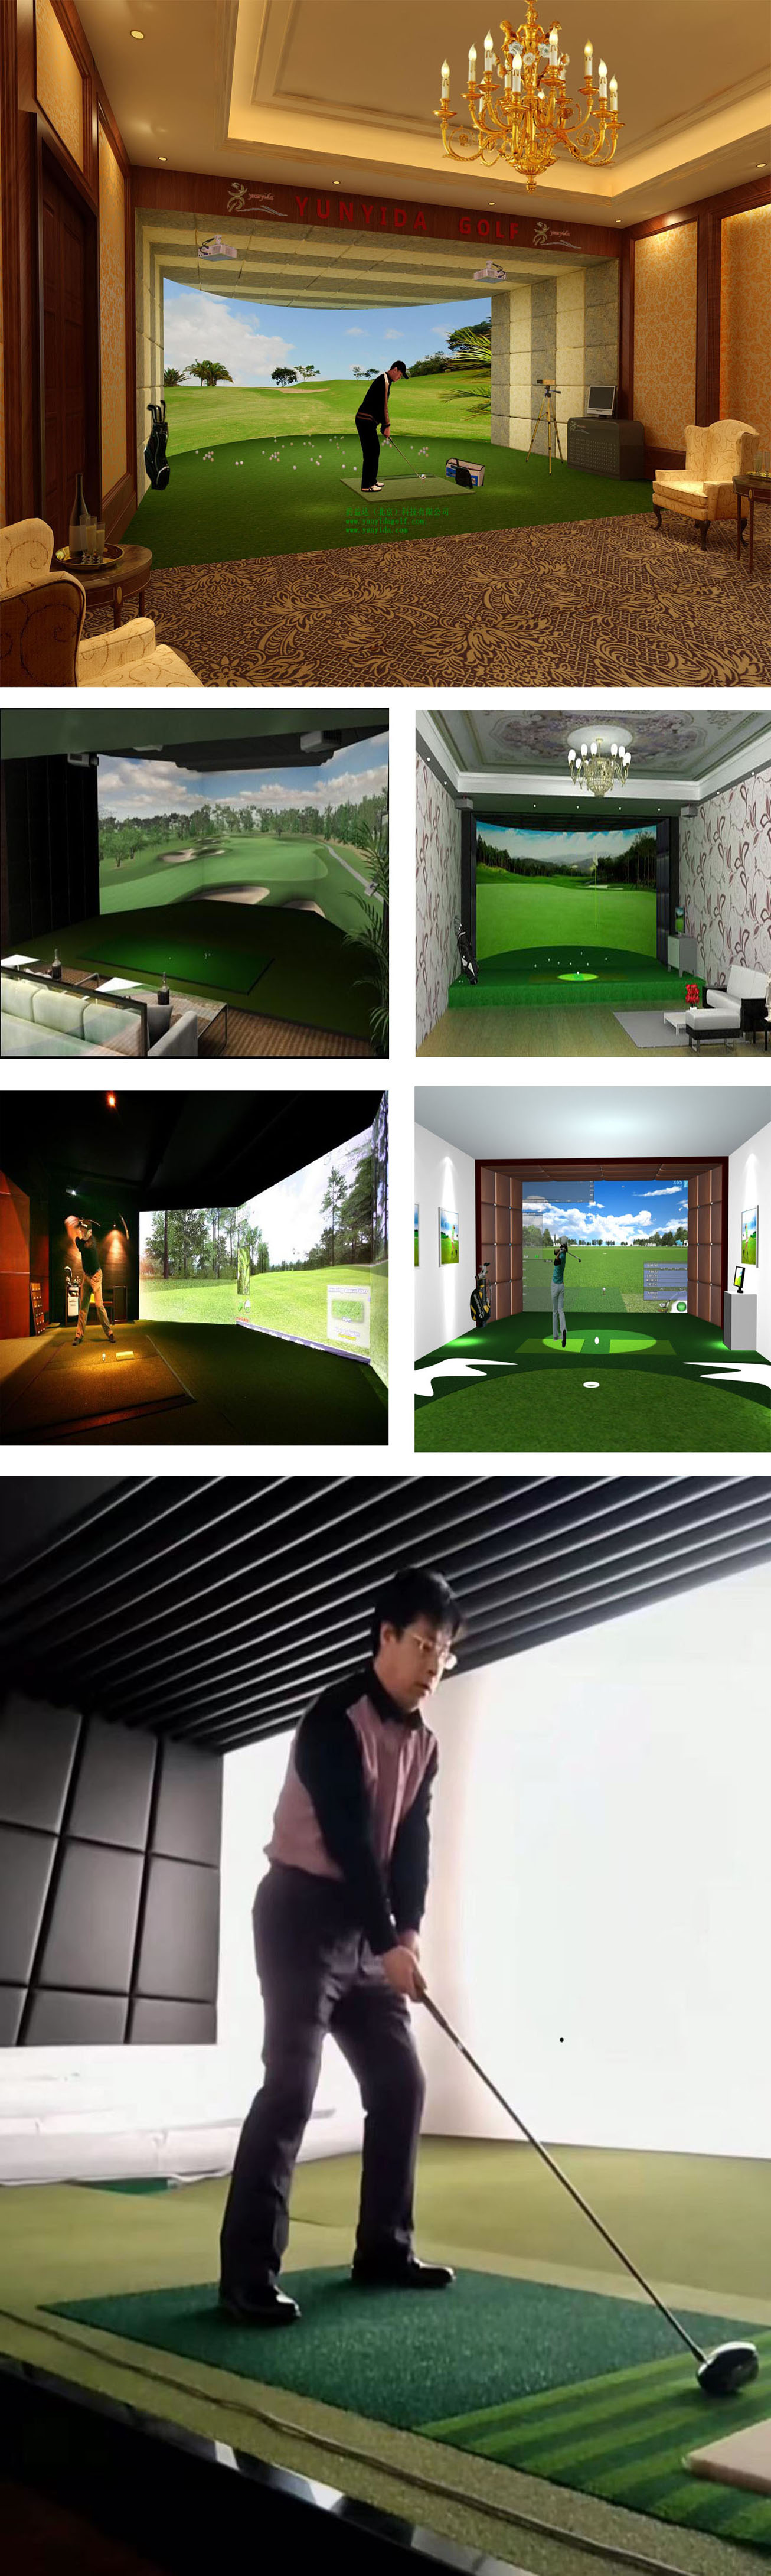 模拟室内高尔夫练习案例 01.jpg